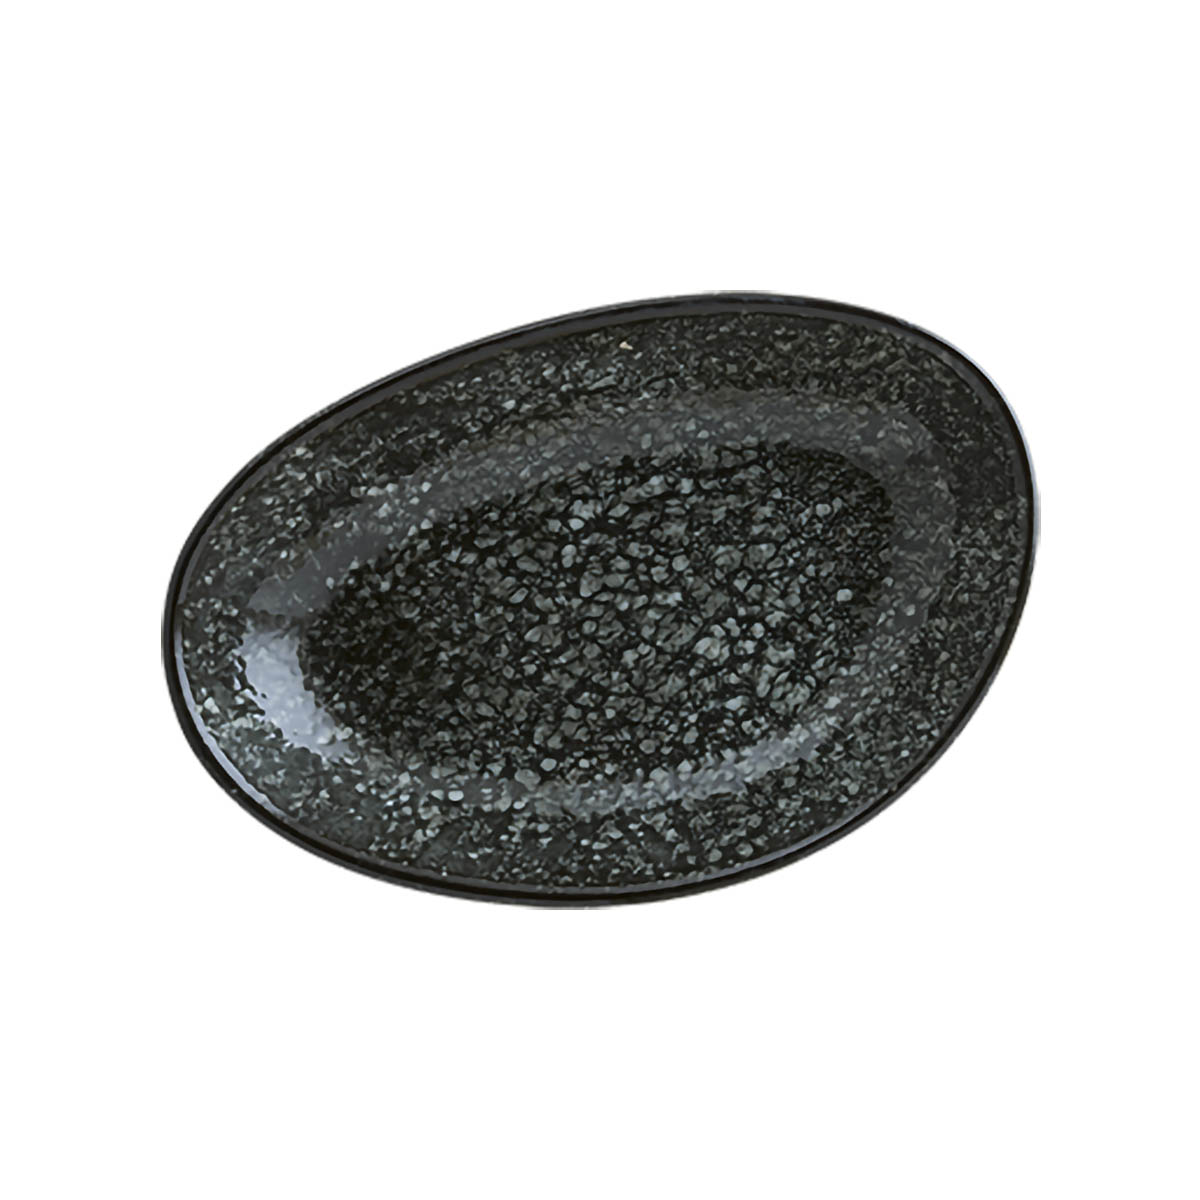 12’li Bonna Porselen Cosmos Black Vago Oval Kayık Tabak 15 X 8.5 cm – COSBLVAO15OKY Çok Amaçlı, Meze Tabakları Cosmos